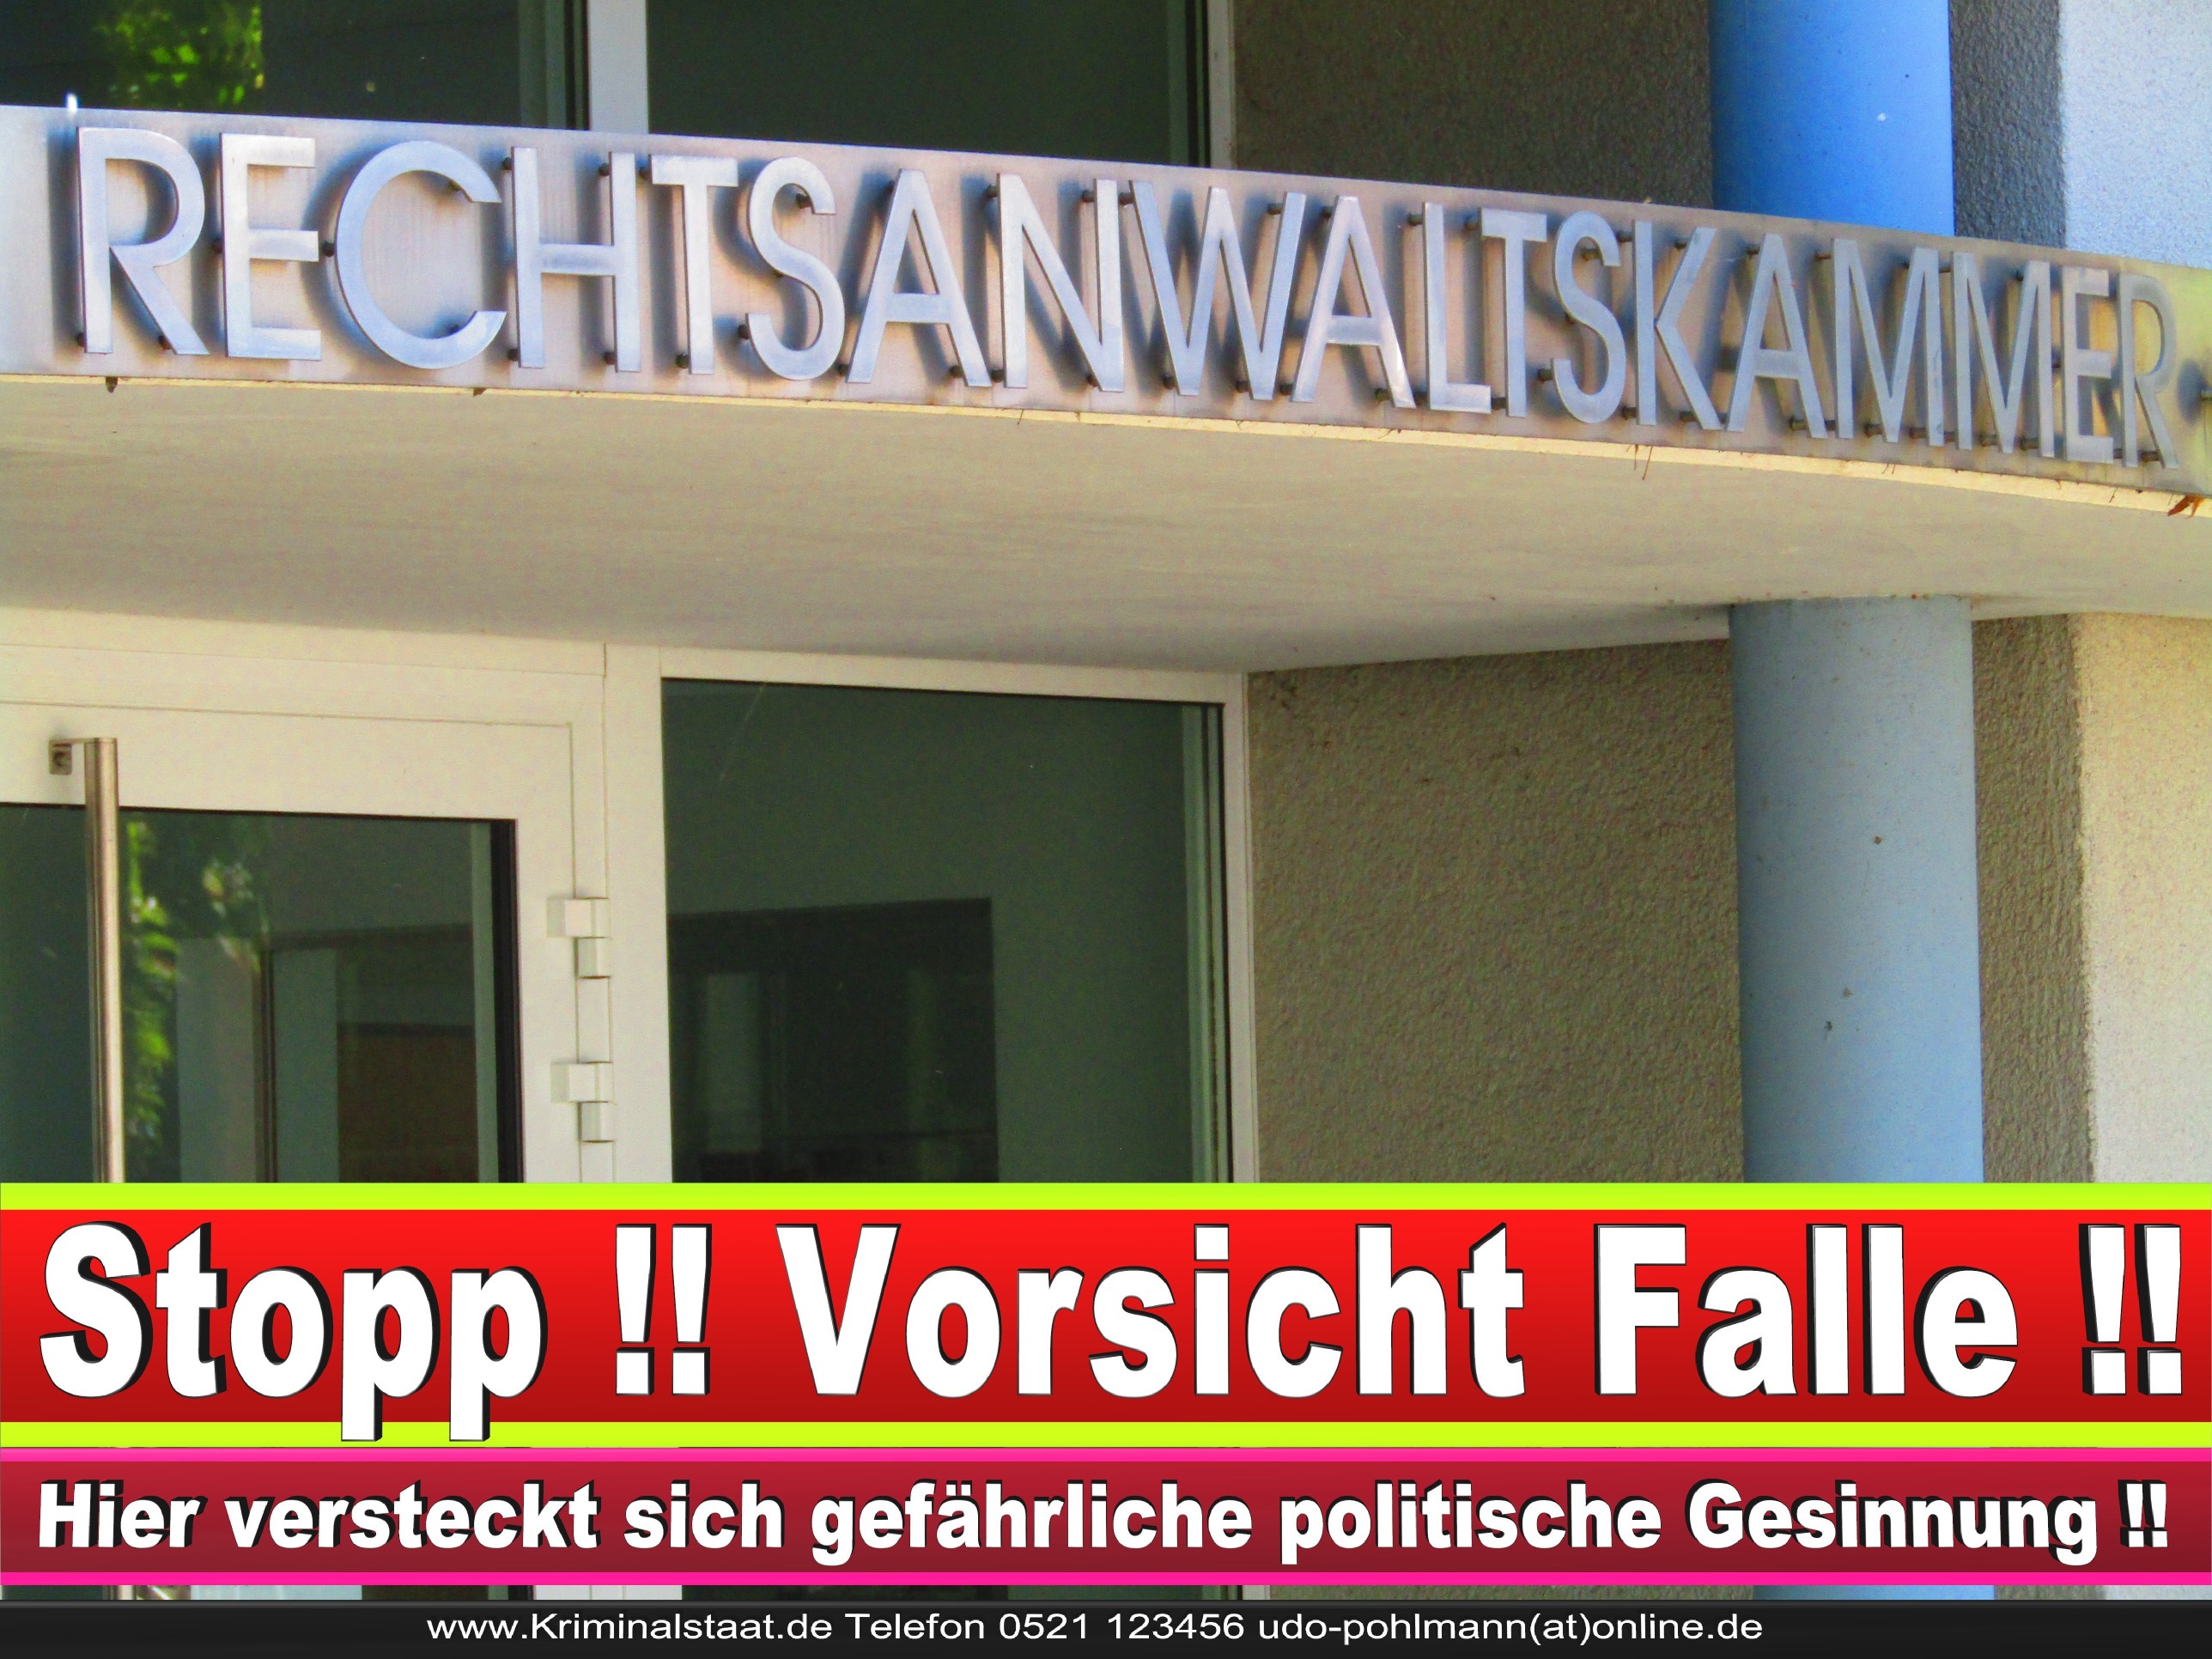 Rechtsanwaltskammer Hamm NRW Justizminister Rechtsanwalt Notar Vermögensverfall Urteil Rechtsprechung CDU SPD FDP Berufsordnung Rechtsanwälte Rechtsprechung (16)